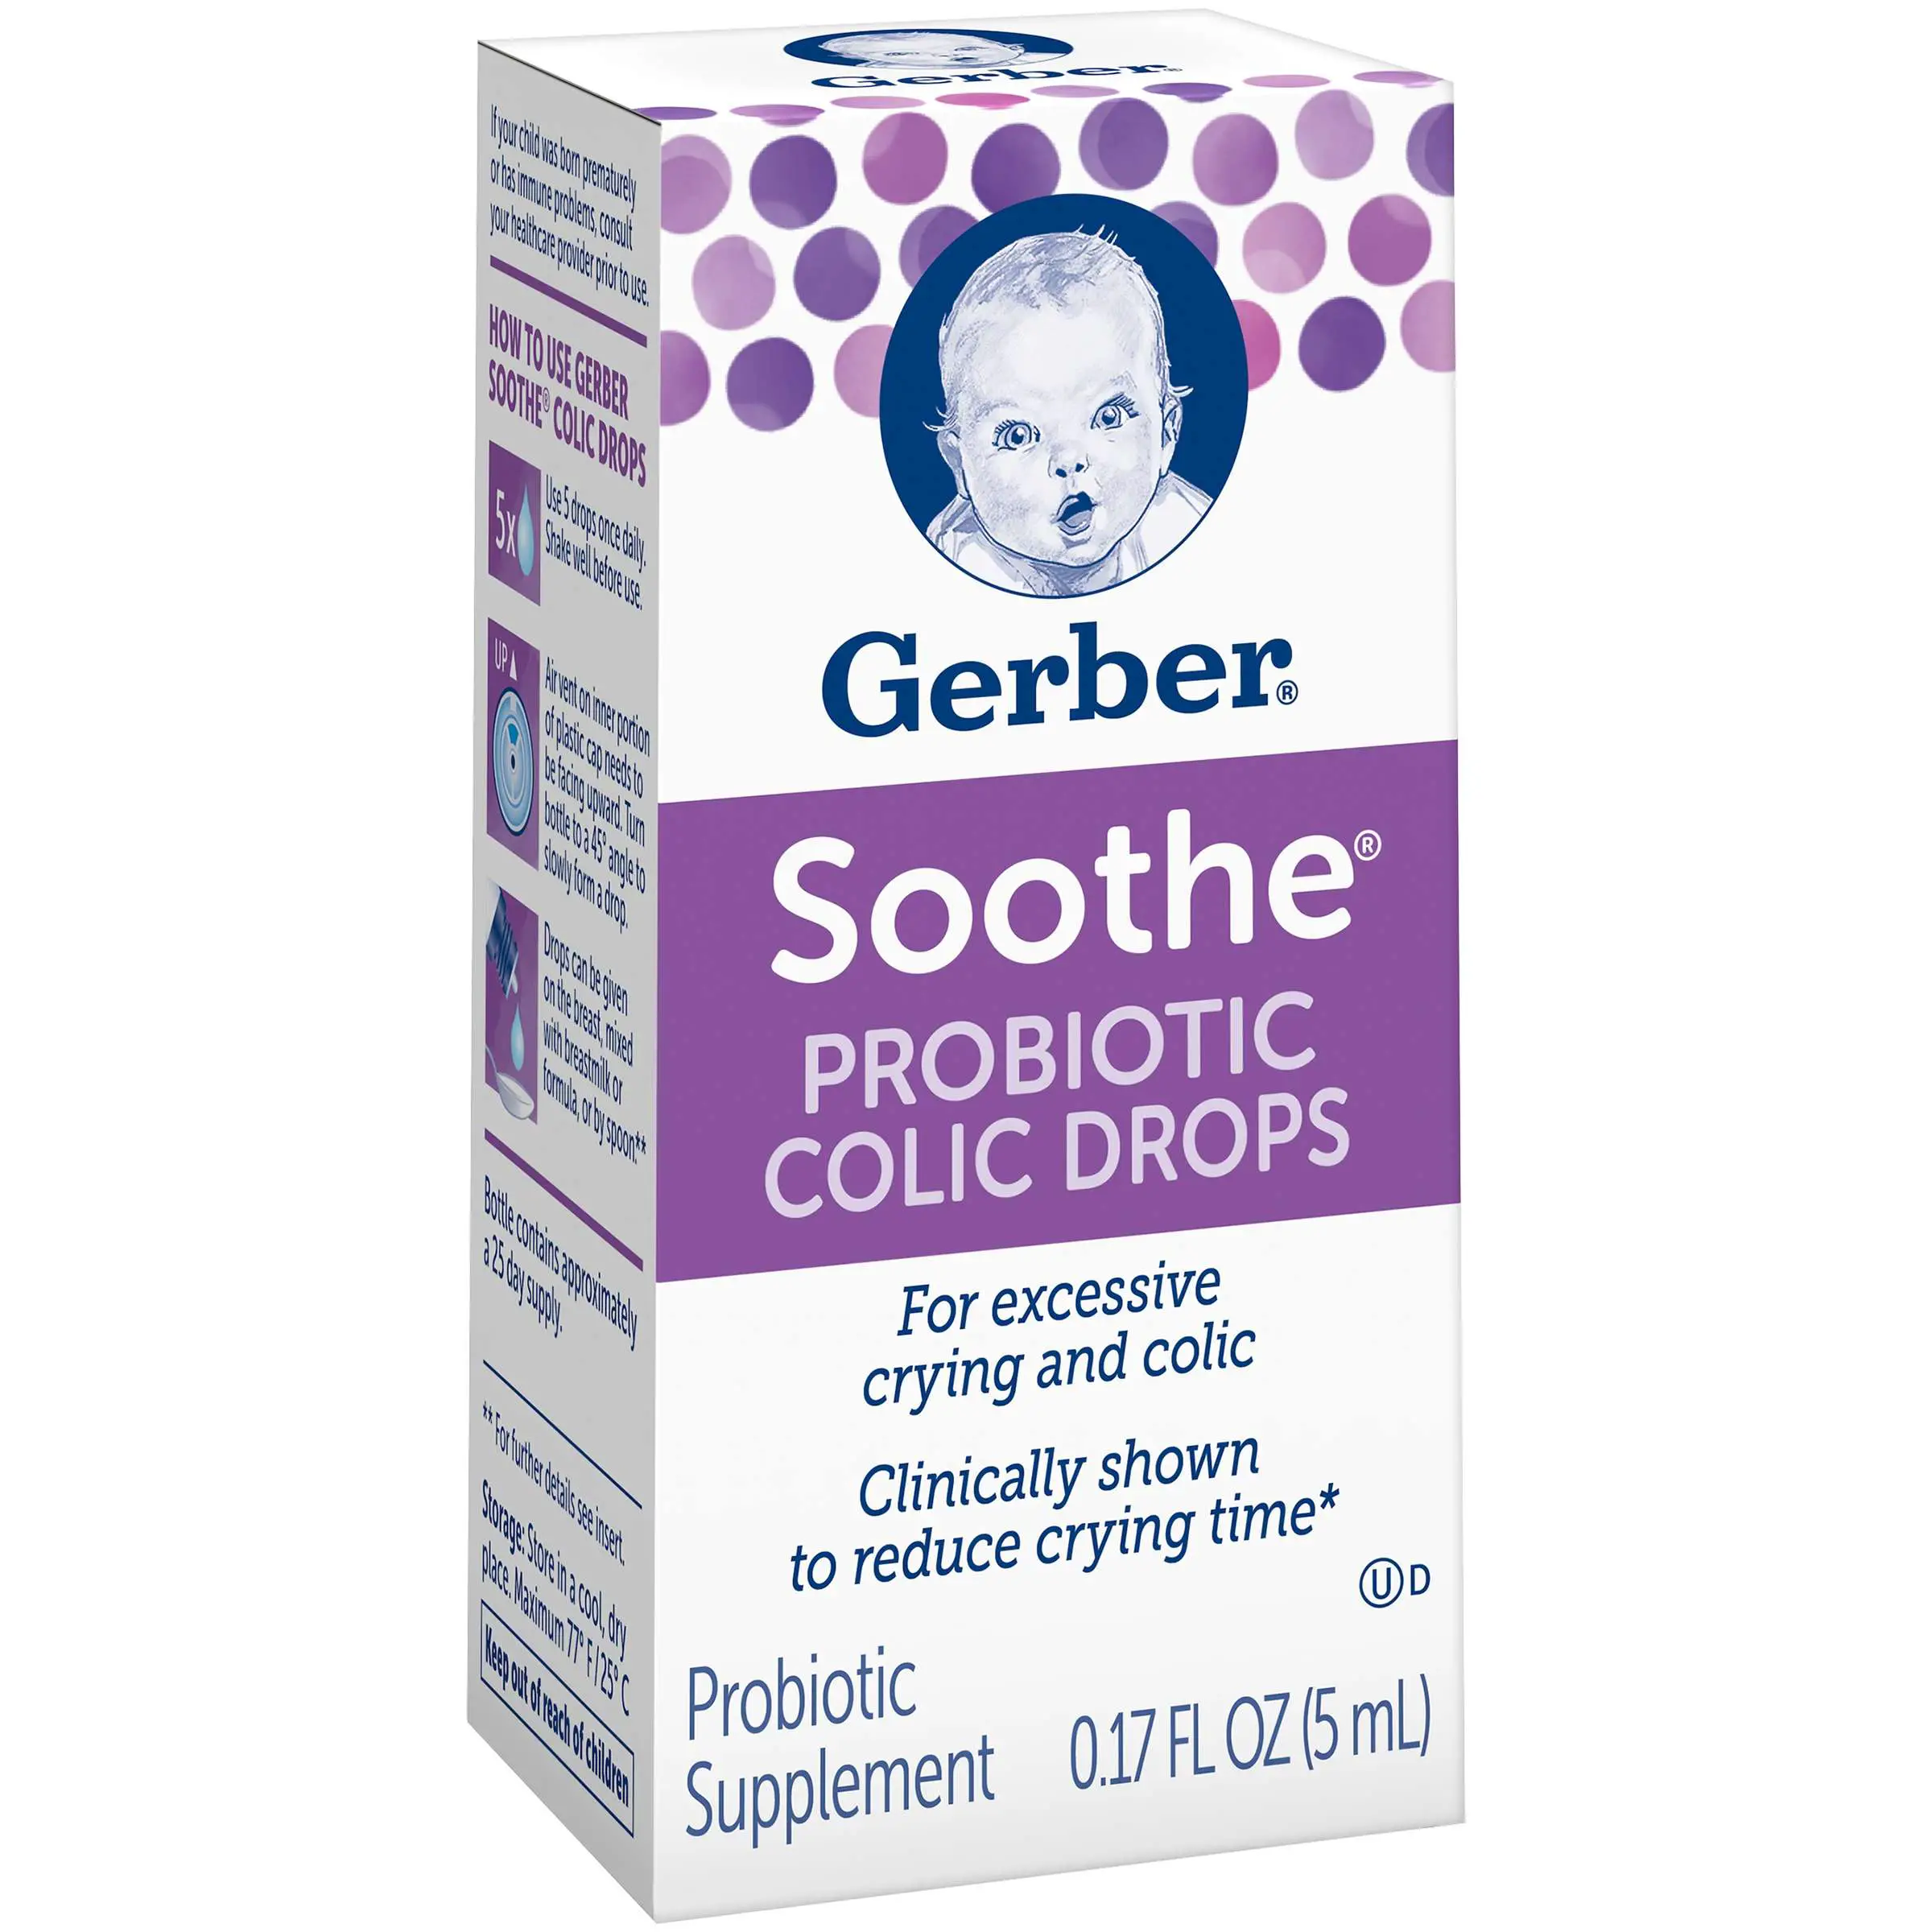 Gerber® Soothe Probiotic Colic Drops, 0.17 fl oz